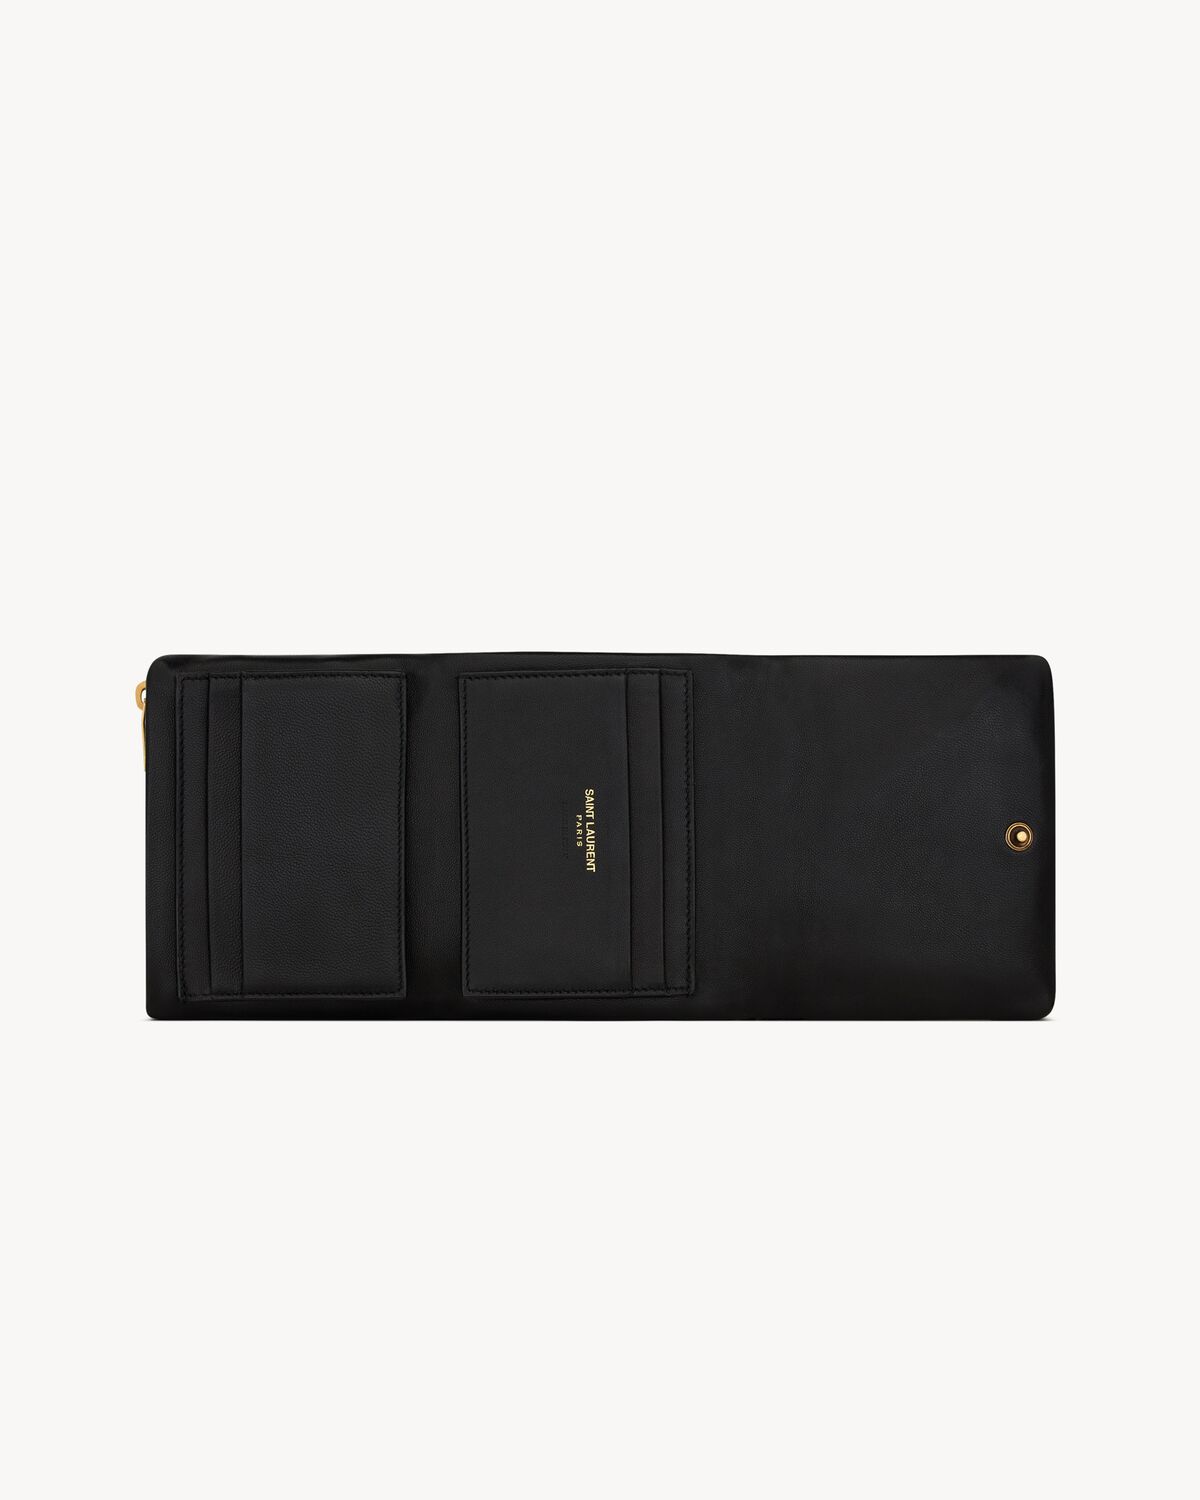 CALYPSO compact wallet in lambskin